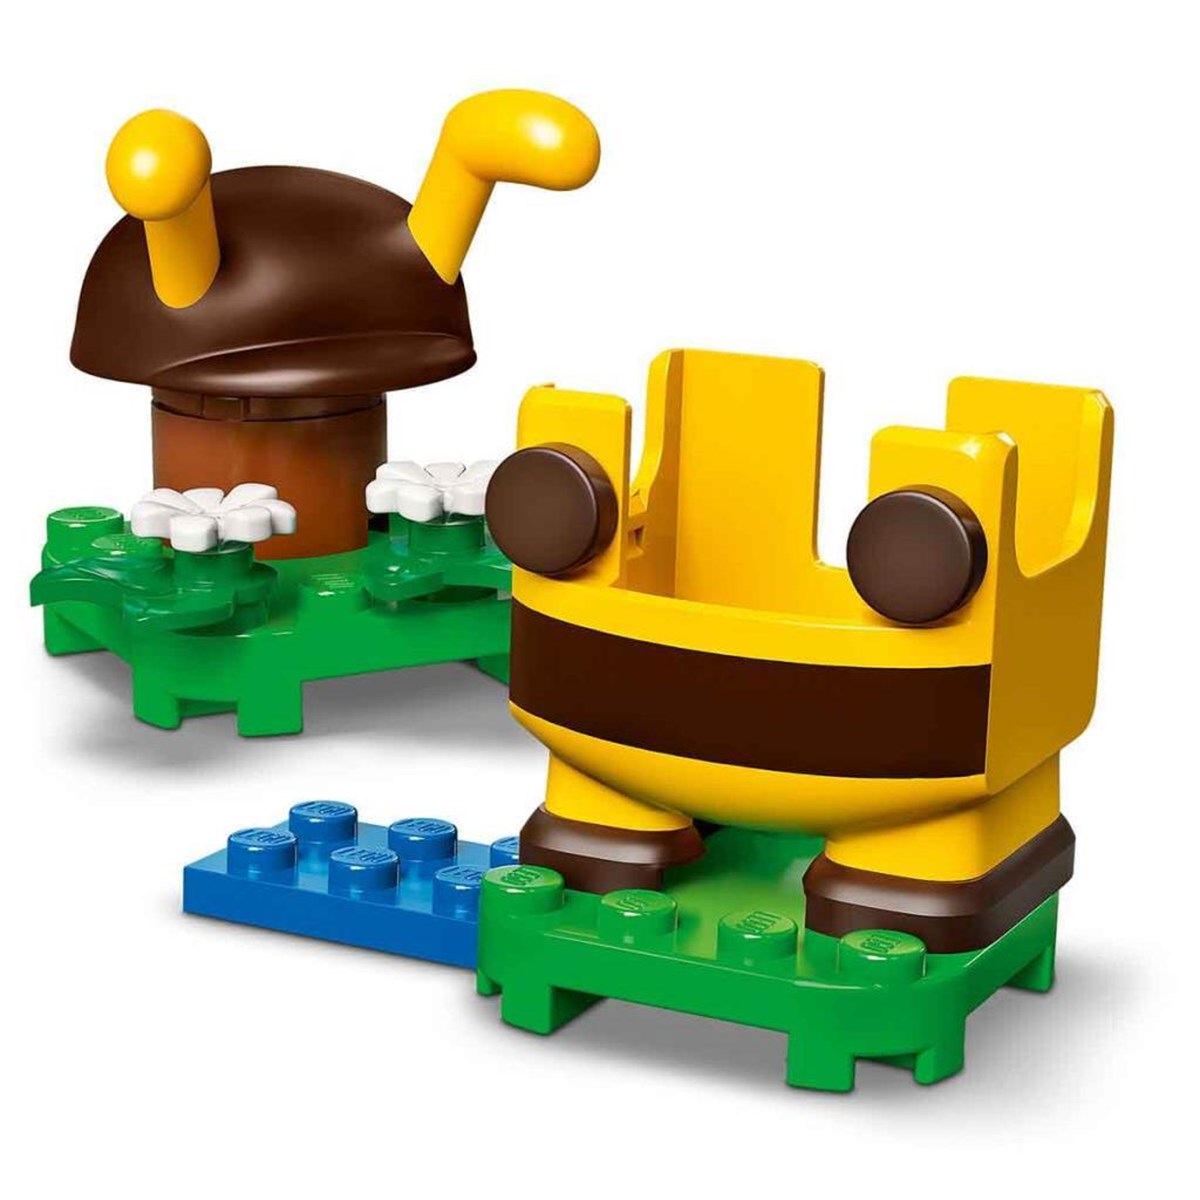 Lego Super Mario Bee Mario Güçlendirme Paketi 71393 | Toysall